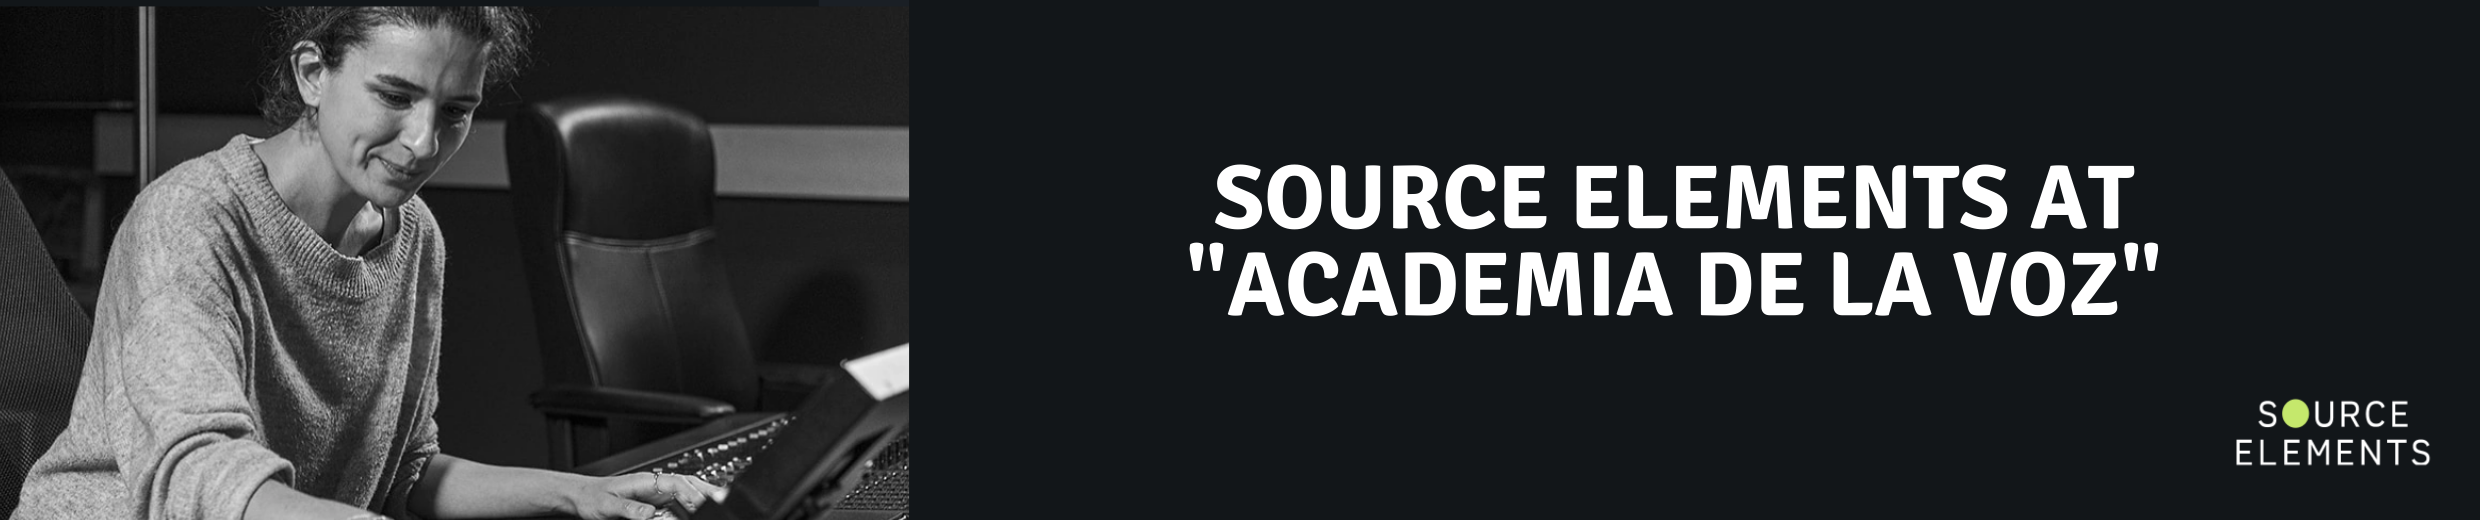 Source Elements at “Academia de la Voz”